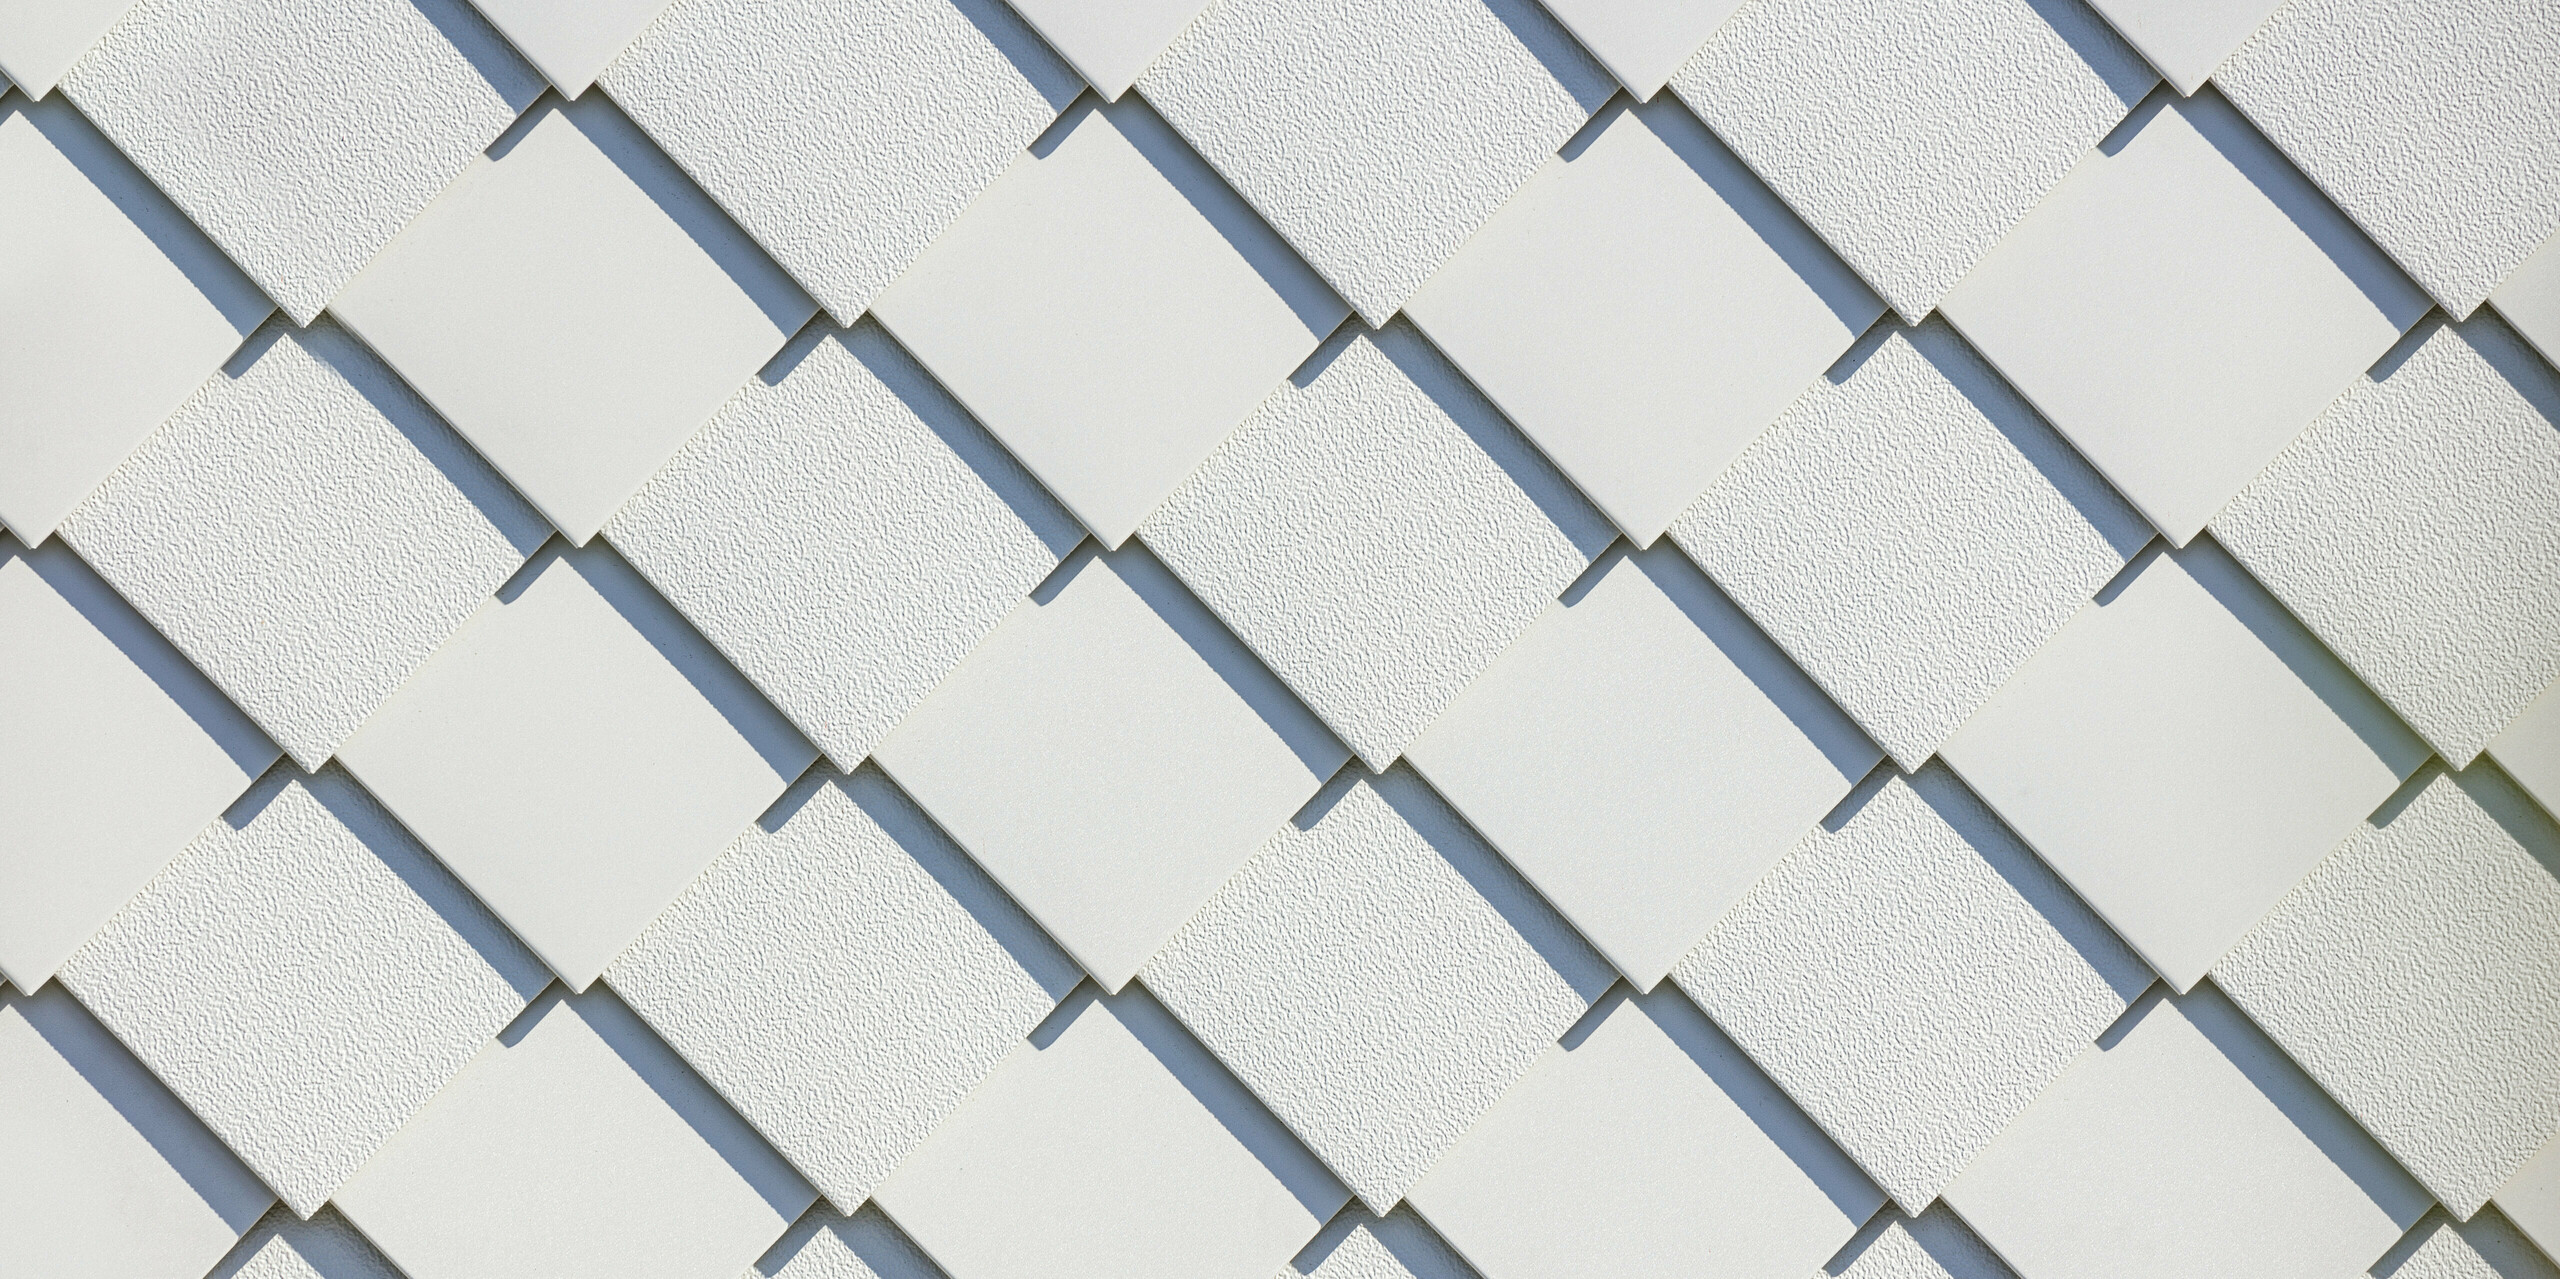 Nahaufnahme der PREFA Wandrauten 20x20 in P.10 Prefaweiß, die als Fassadensystem an einem Neubau-Mehrfamilienhaus in der Schweiz angebracht sind. Die vielseitige Oberflächengestaltung der Aluminiumrauten wurde hierbei als Designelement genutzt. Die Linien der Rauten wurden abwechselnd mit glatter und mit Stucco-Oberfläche verlegt. Die wechselnde Oberflächenstruktur betont die präzise Verarbeitung zusätzlich. Die PREFA Dach- und Wandrauten sind als langlebige und wartungsarme Fassadenlösung bekannt und bieten durch ihre gleichmäßige Anordnung eine elegante Ästhetik.